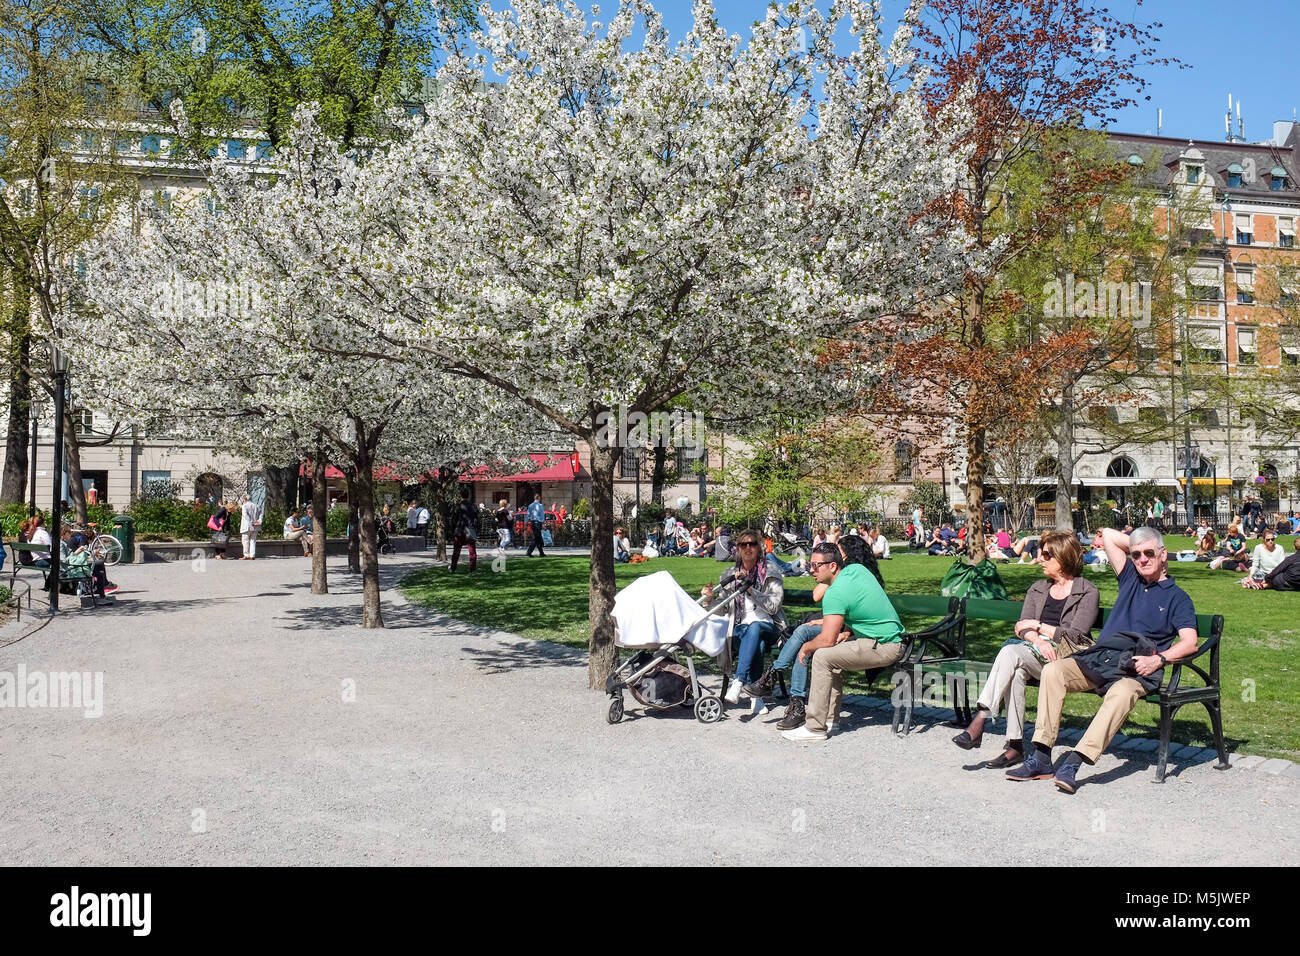 La gente podrá relajarse en el parque Berzelii durante la primavera en Estocolmo. Este es uno de los principales parques de la ciudad de Estocolmo Foto de stock